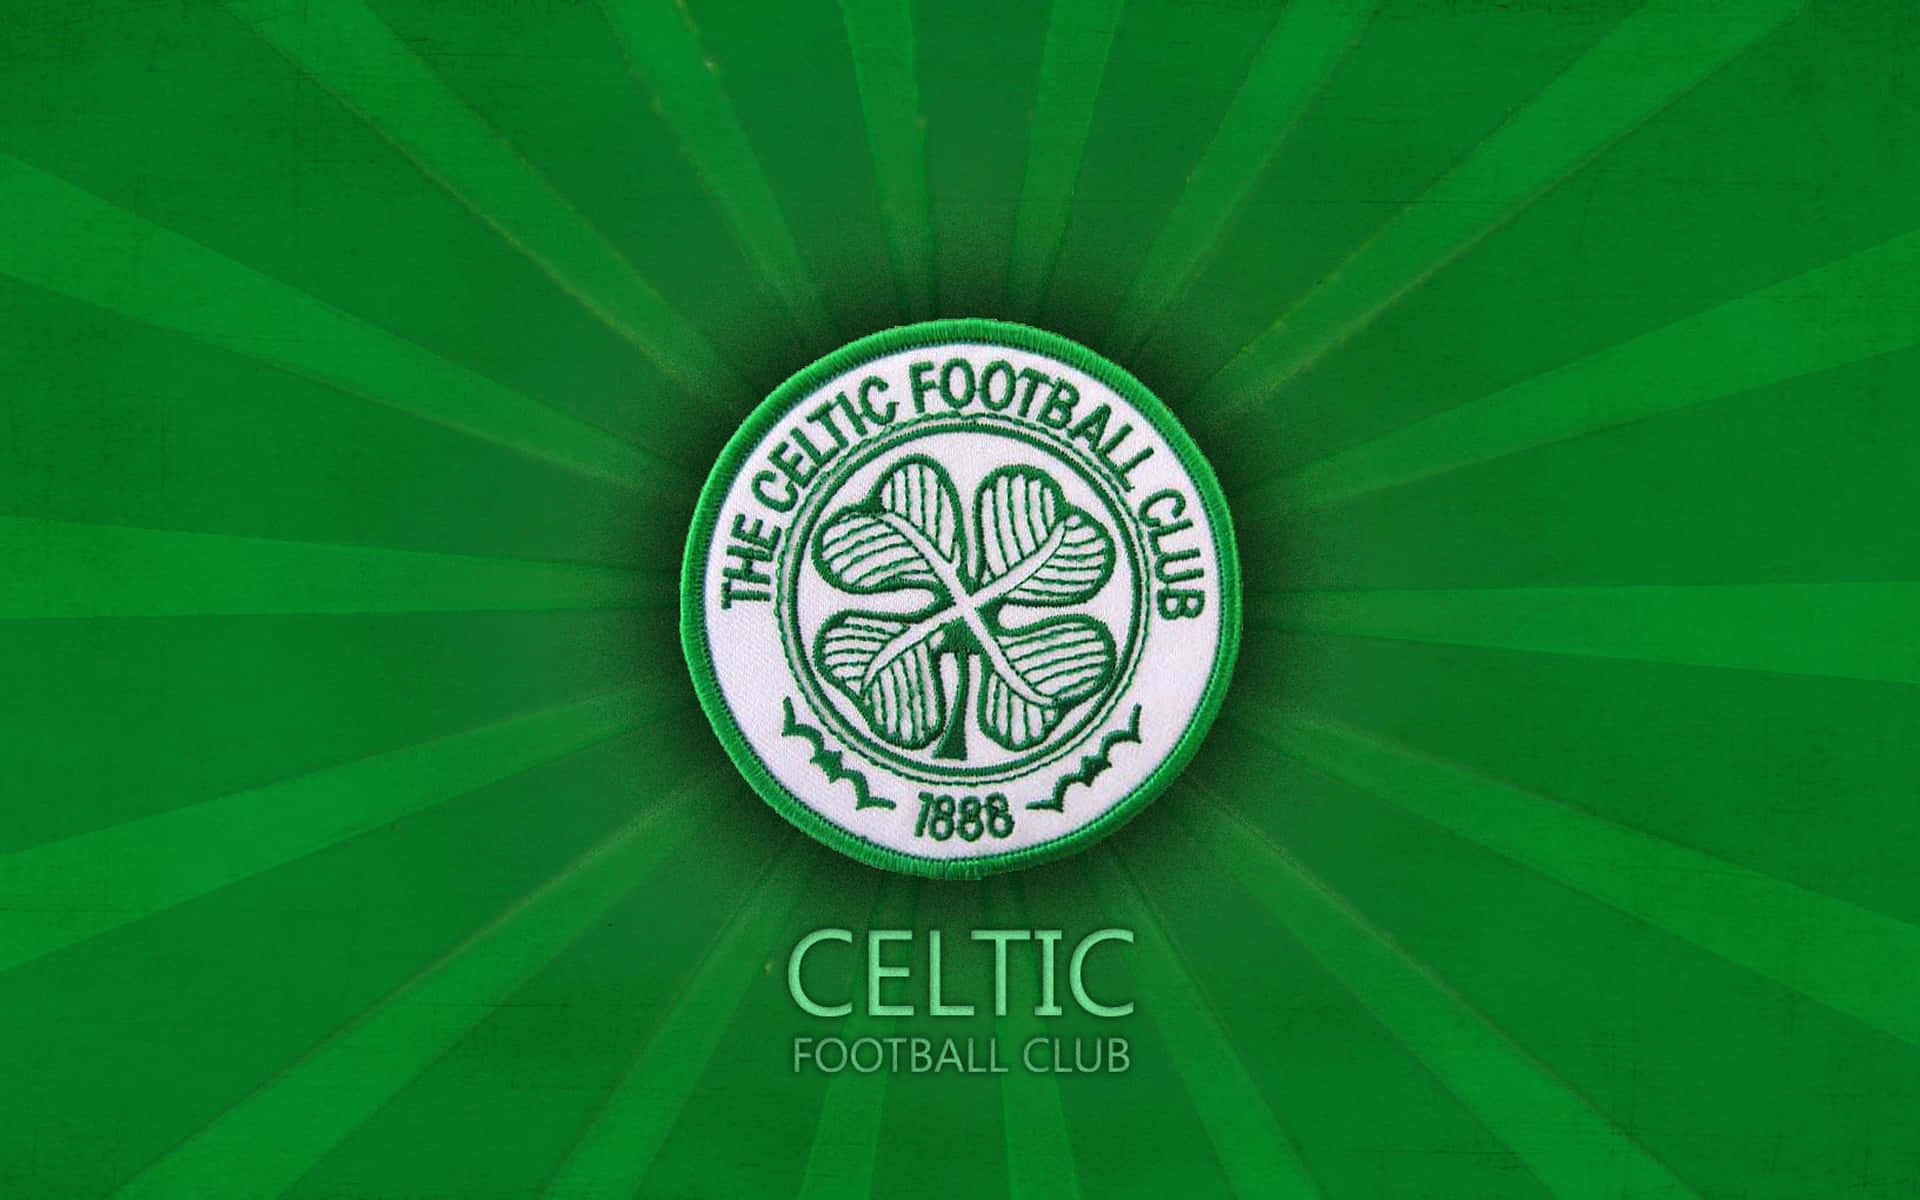 Celticfc-logo Auf Grünem Hintergrund. Wallpaper